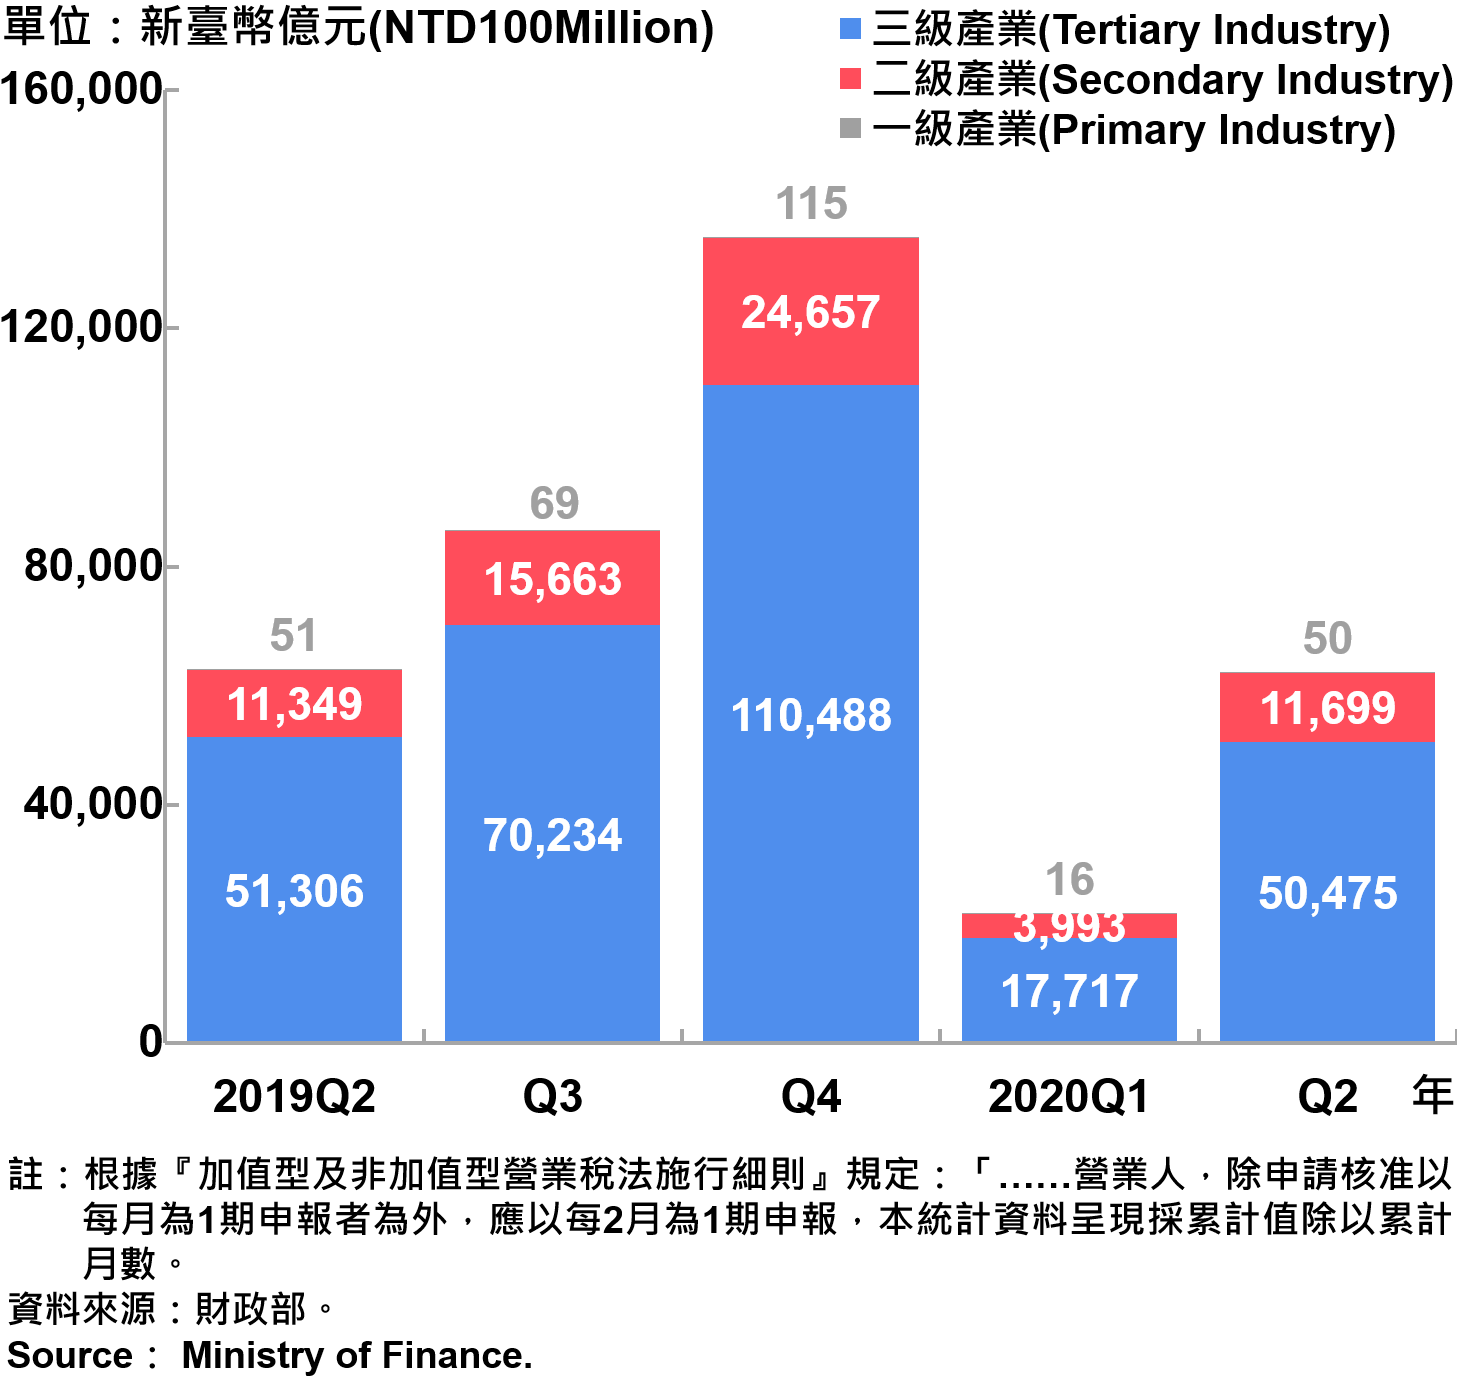 臺北市一二三級產業銷售額—2020Q2 Sales of Primary , Secondary and Tertiary Industry in Taipei City—2020Q2